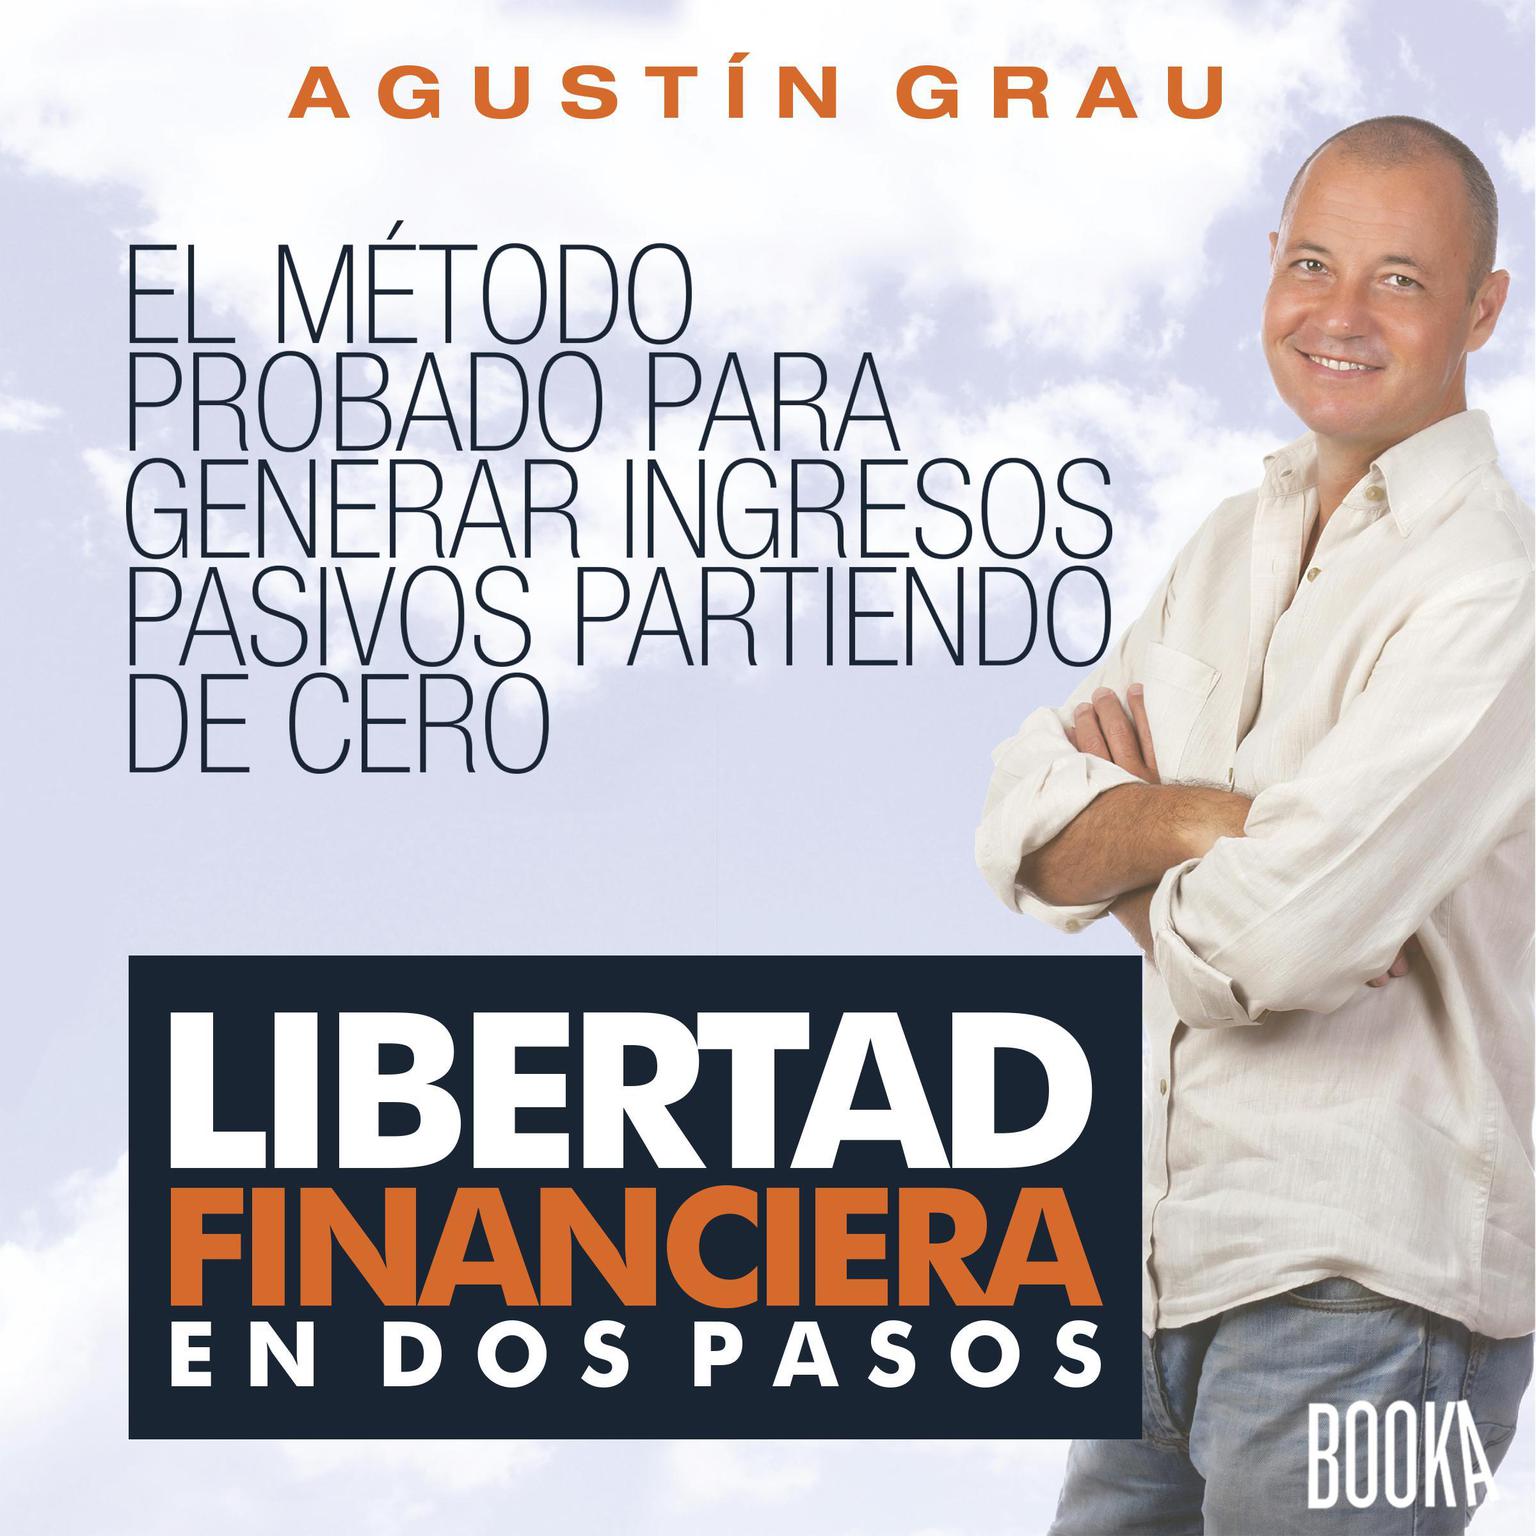 Libertad Financiera en 2 Pasos Audiobook, by Agustin Grau